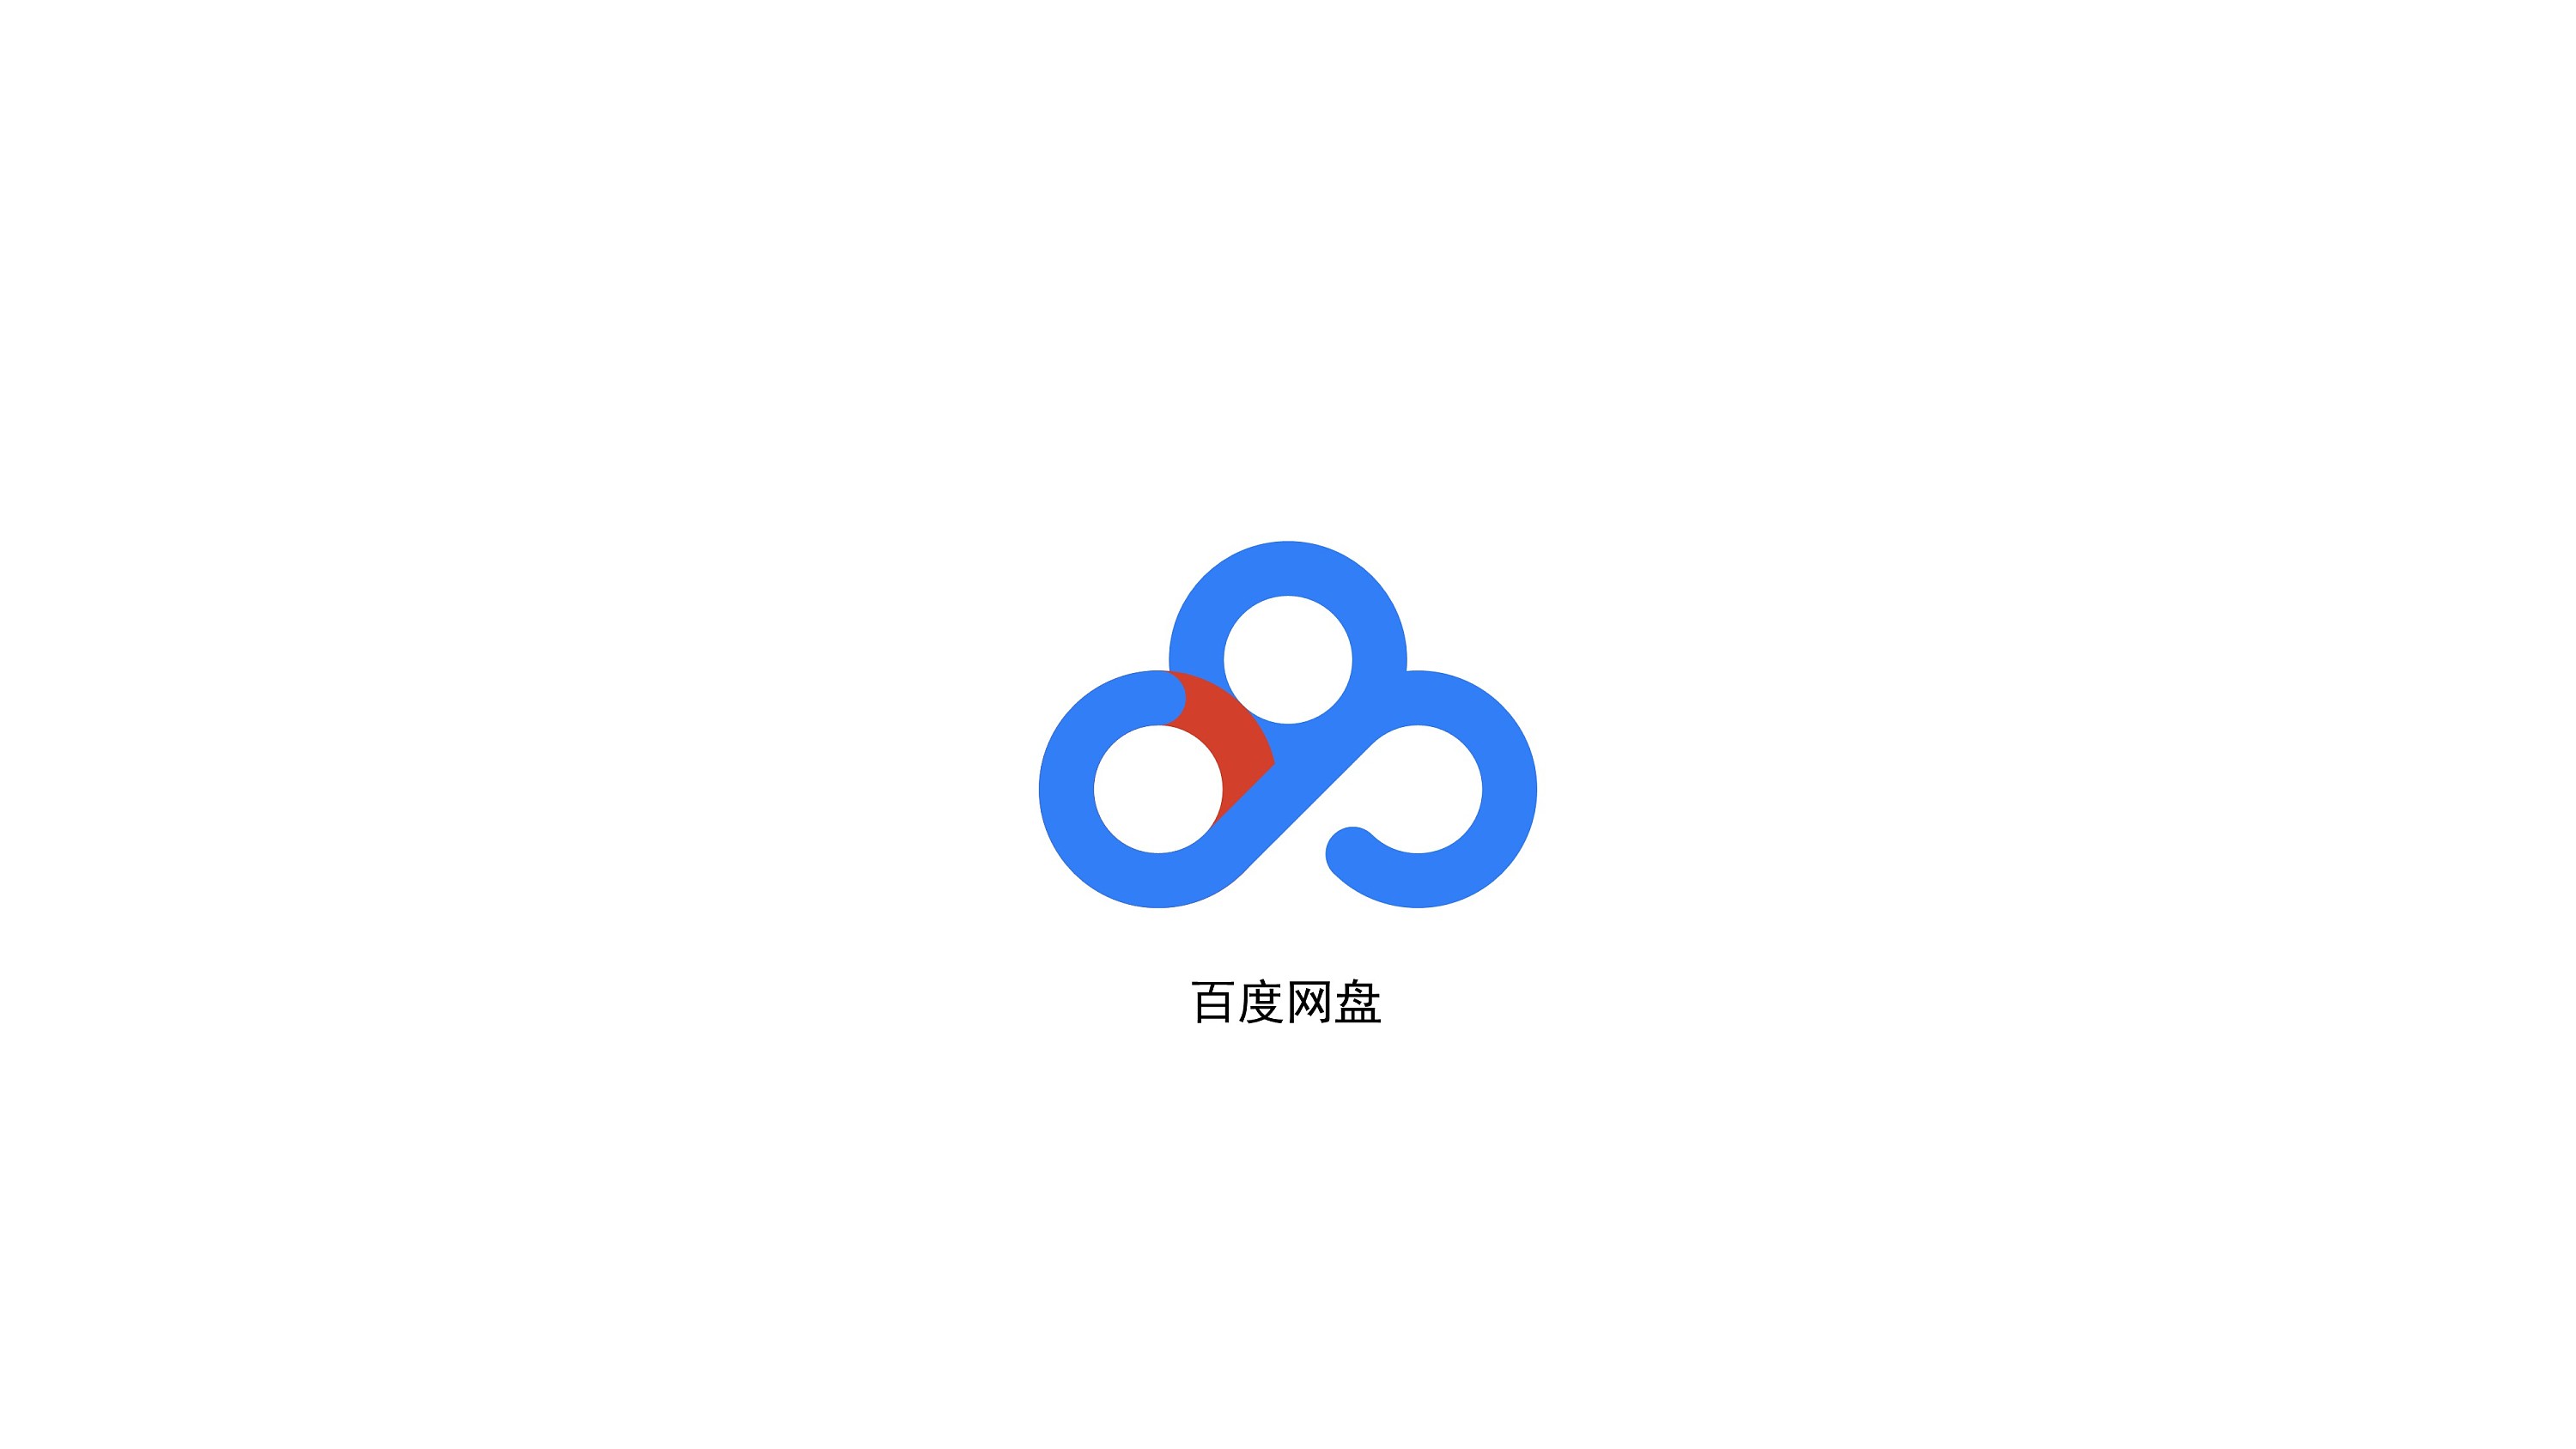 【教程】ai制作百度网盘logo